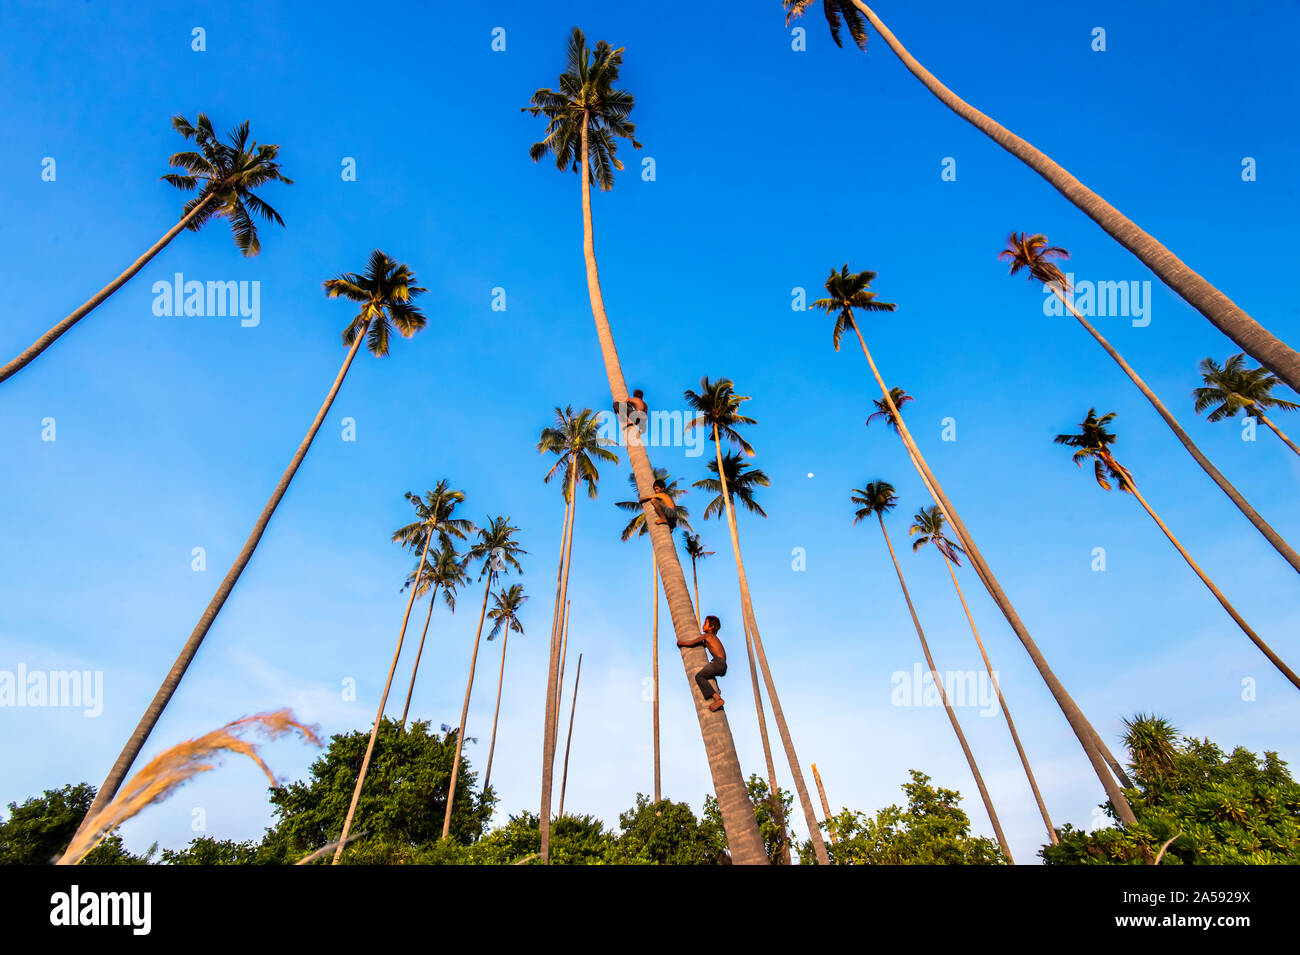 Kids climb coconut tree Stock Photo